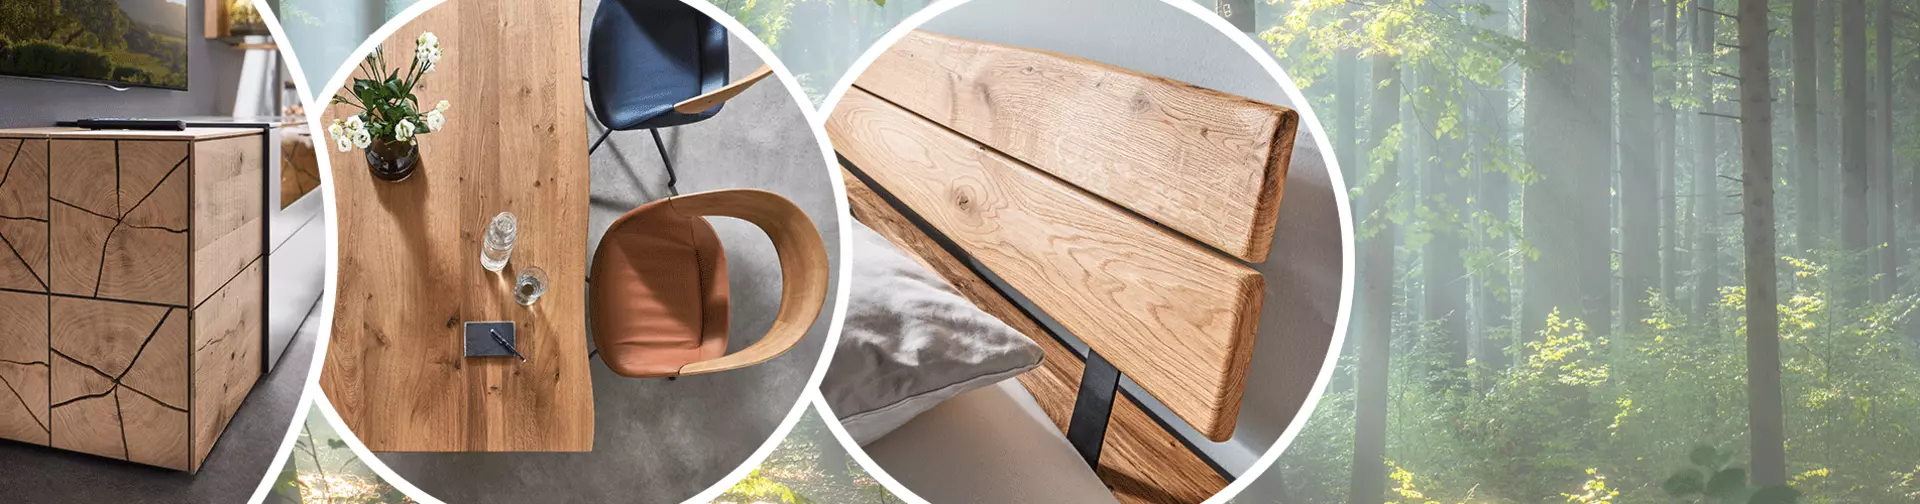 Nachhaltige Möbel für umweltbewusstes Wohnen - Tipps und Ideen von Möbel Inhofer